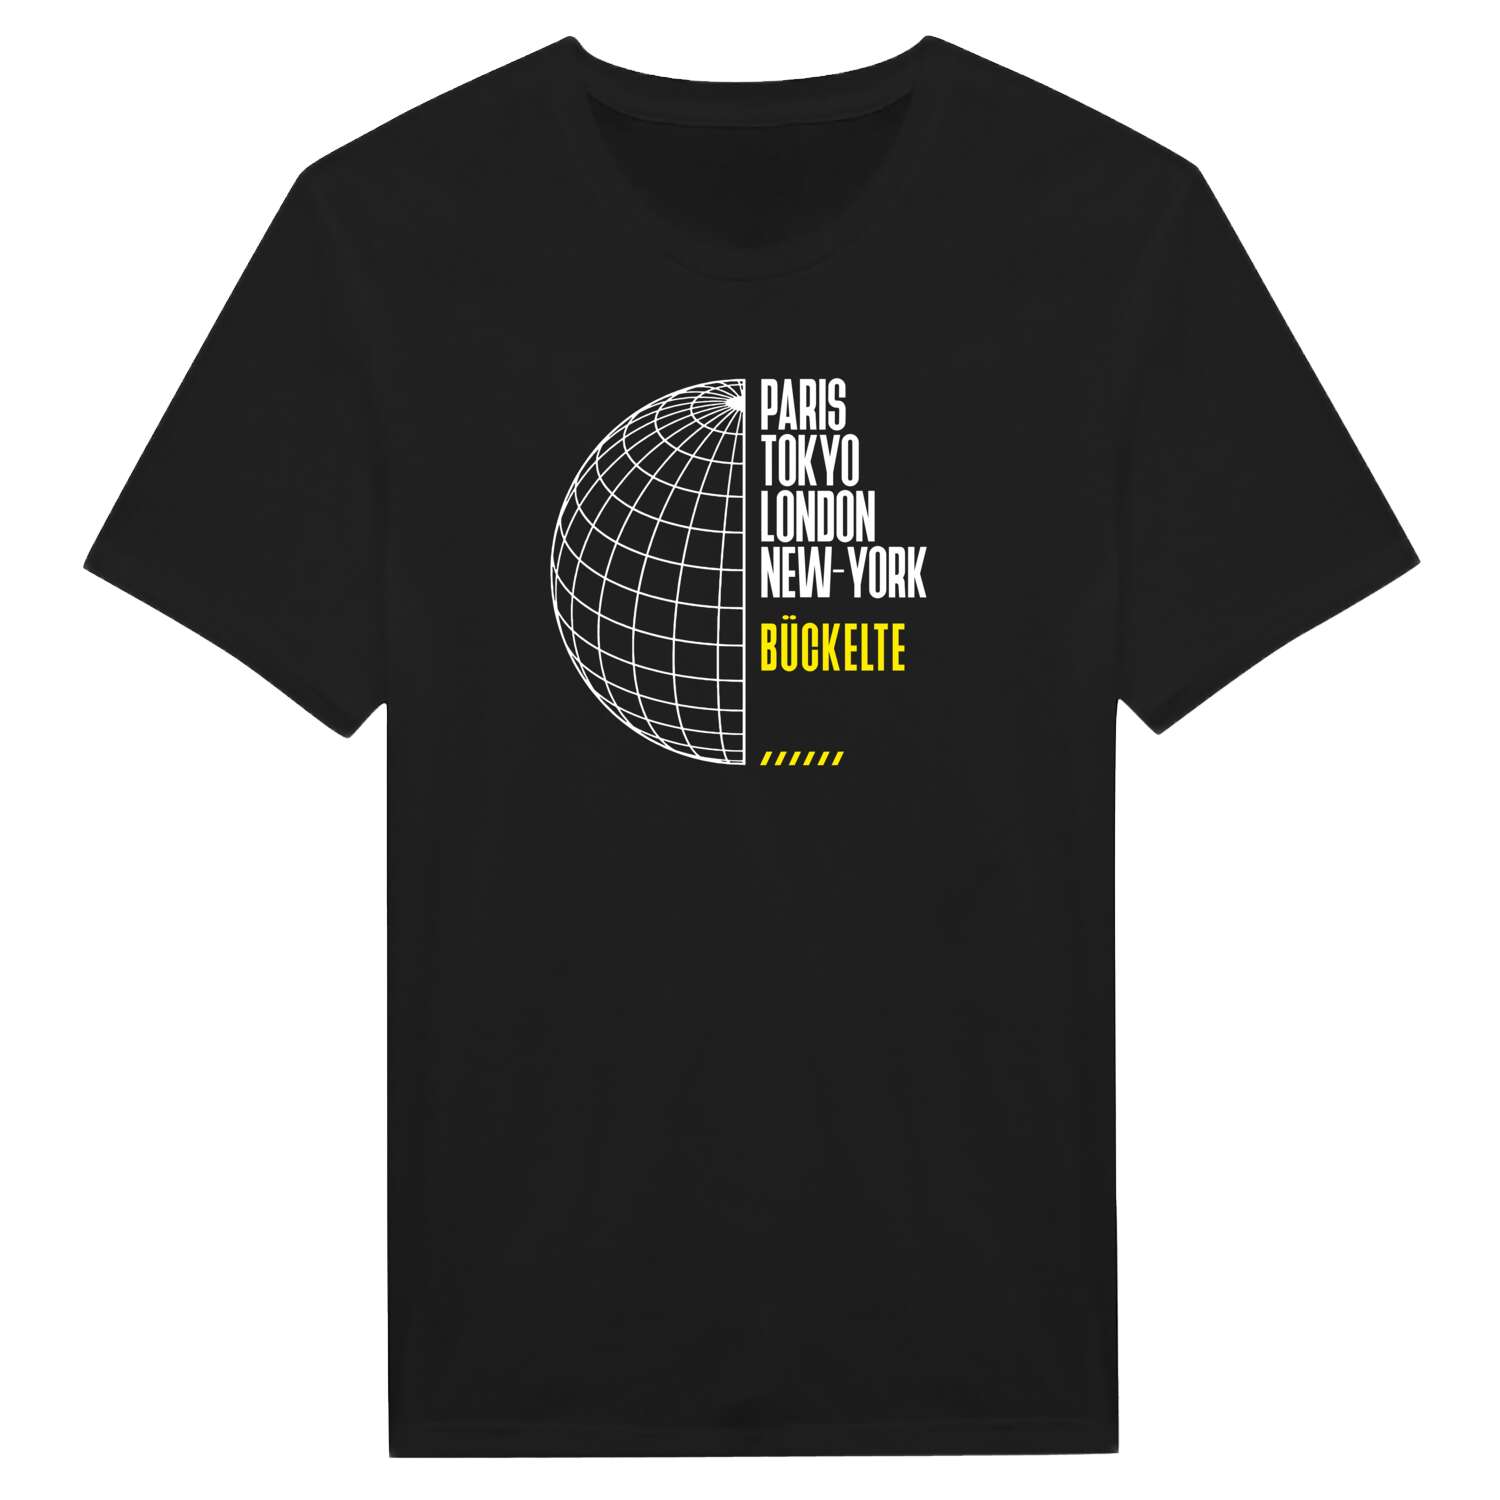 Bückelte T-Shirt »Paris Tokyo London«